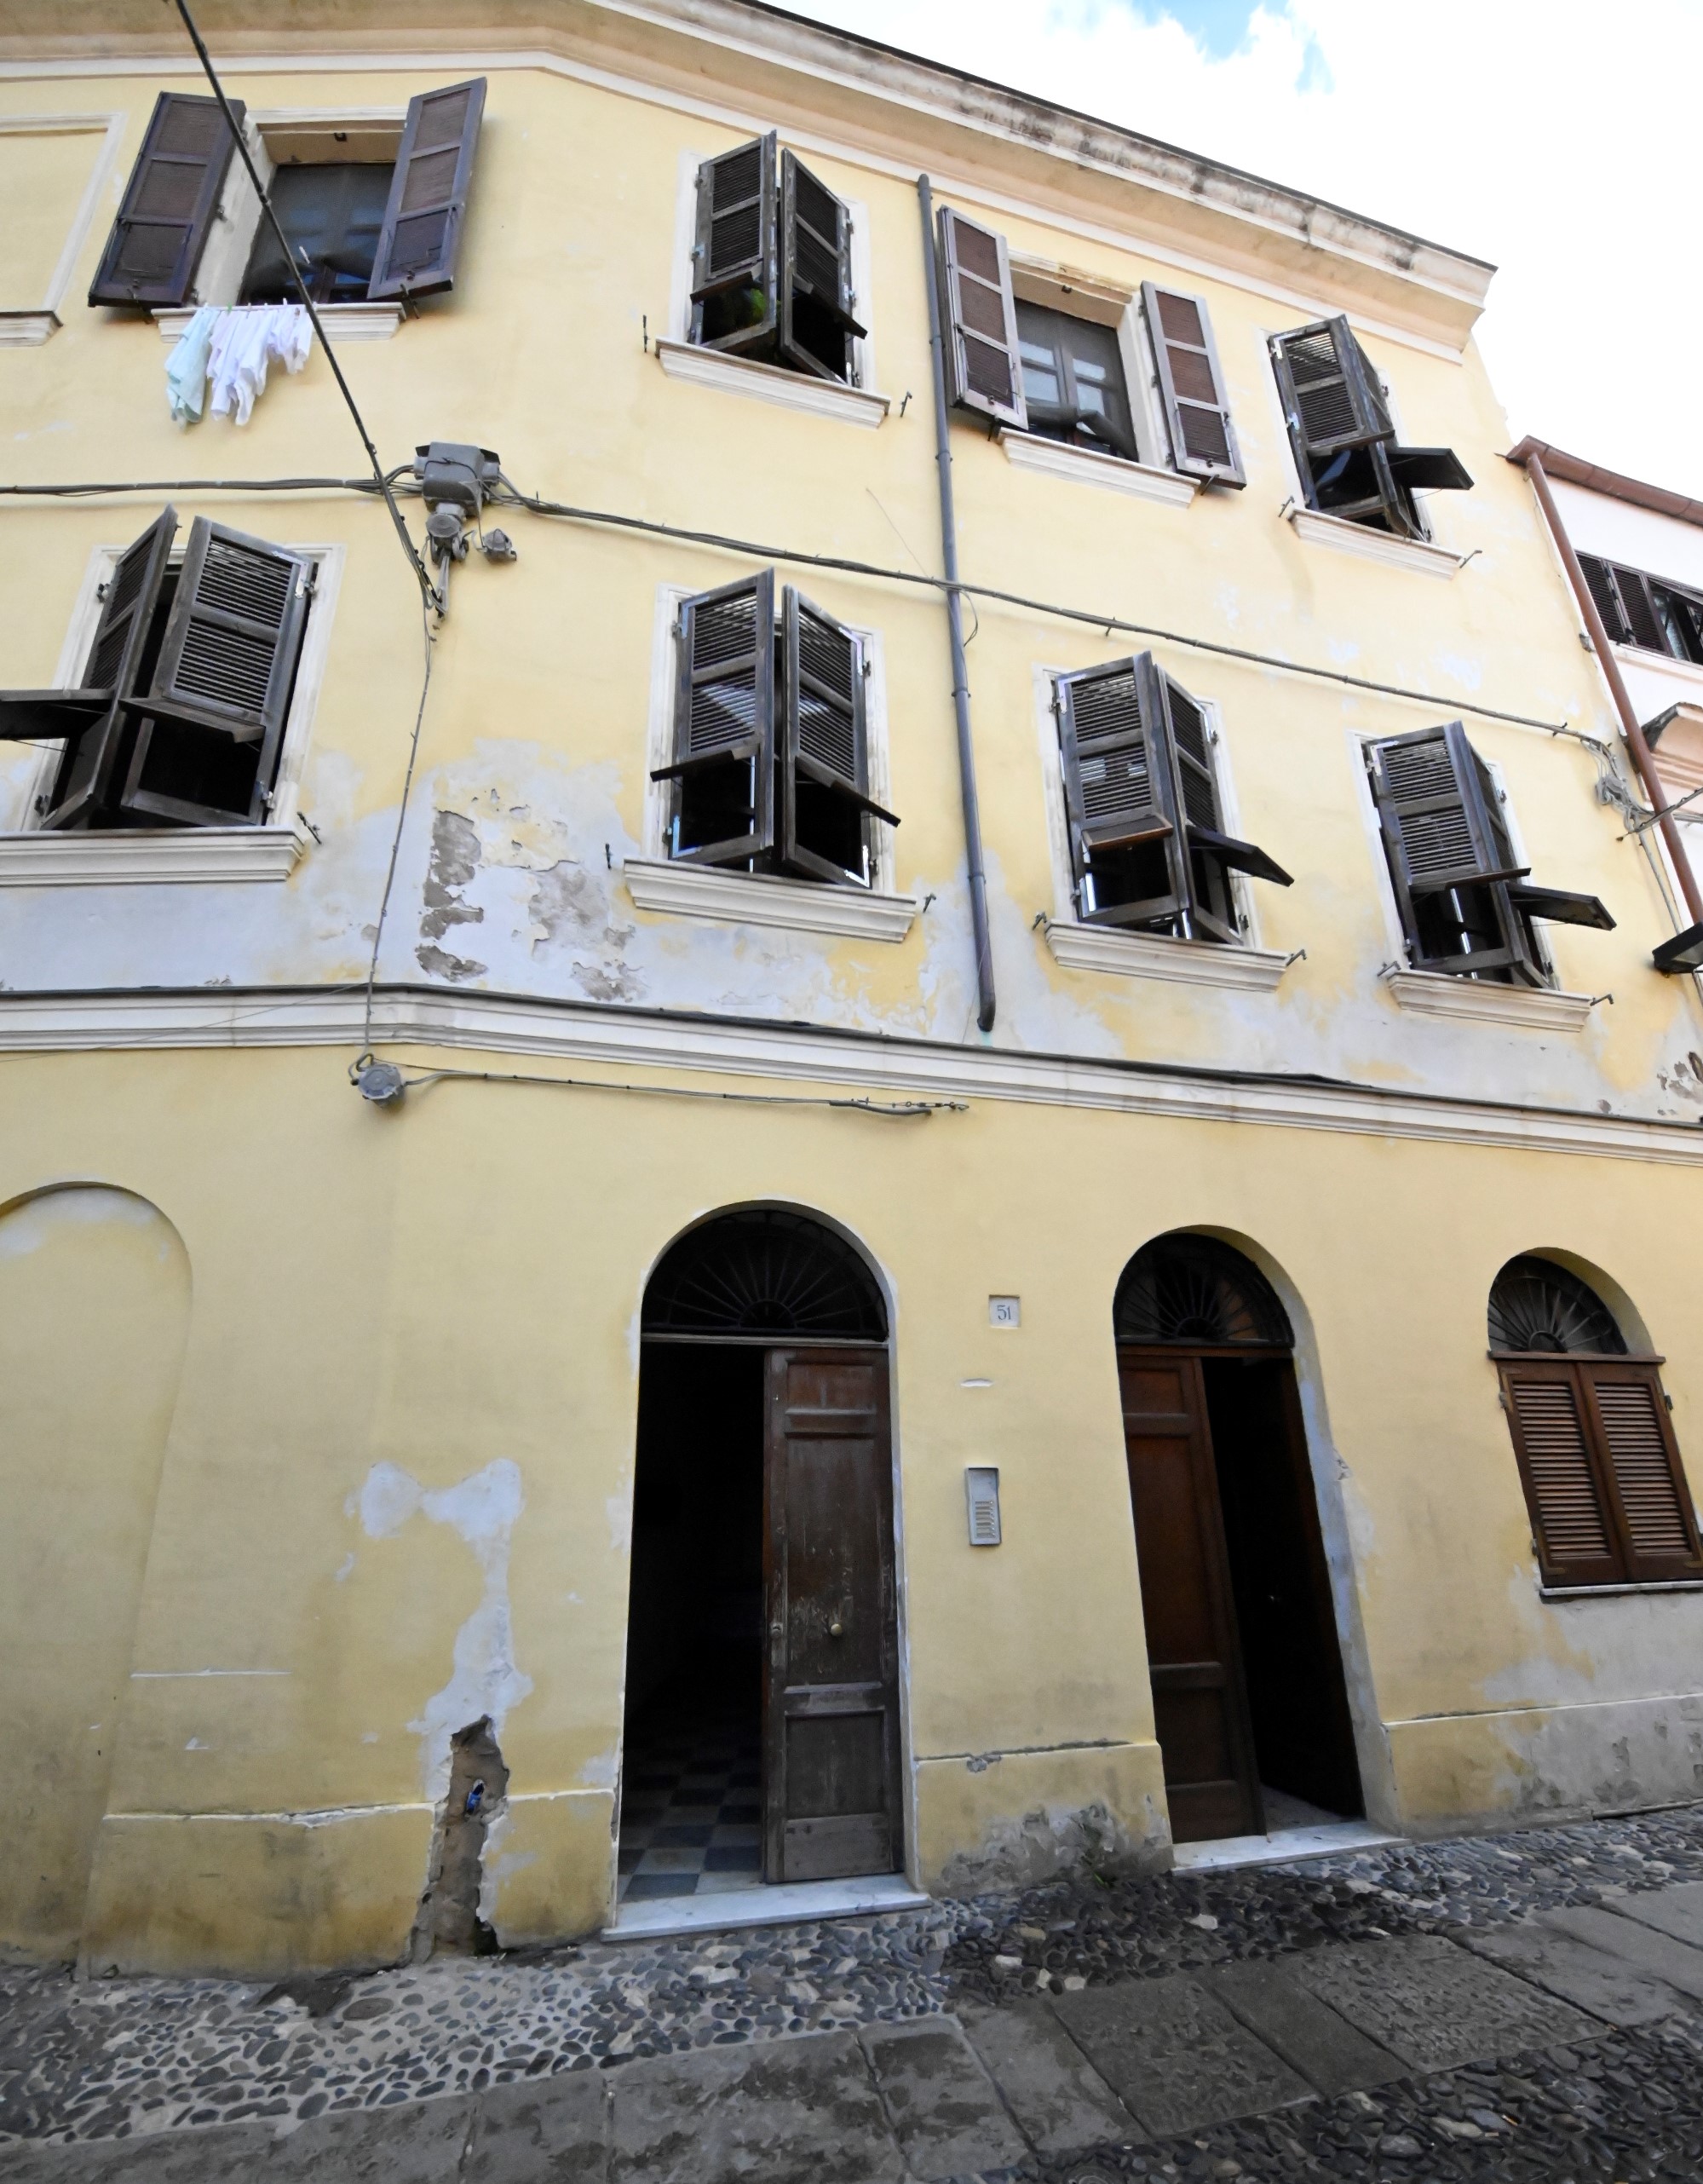 Antica casa in via Sant'Apollinare 51 (palazzo, borghese) - Sassari (SS) 